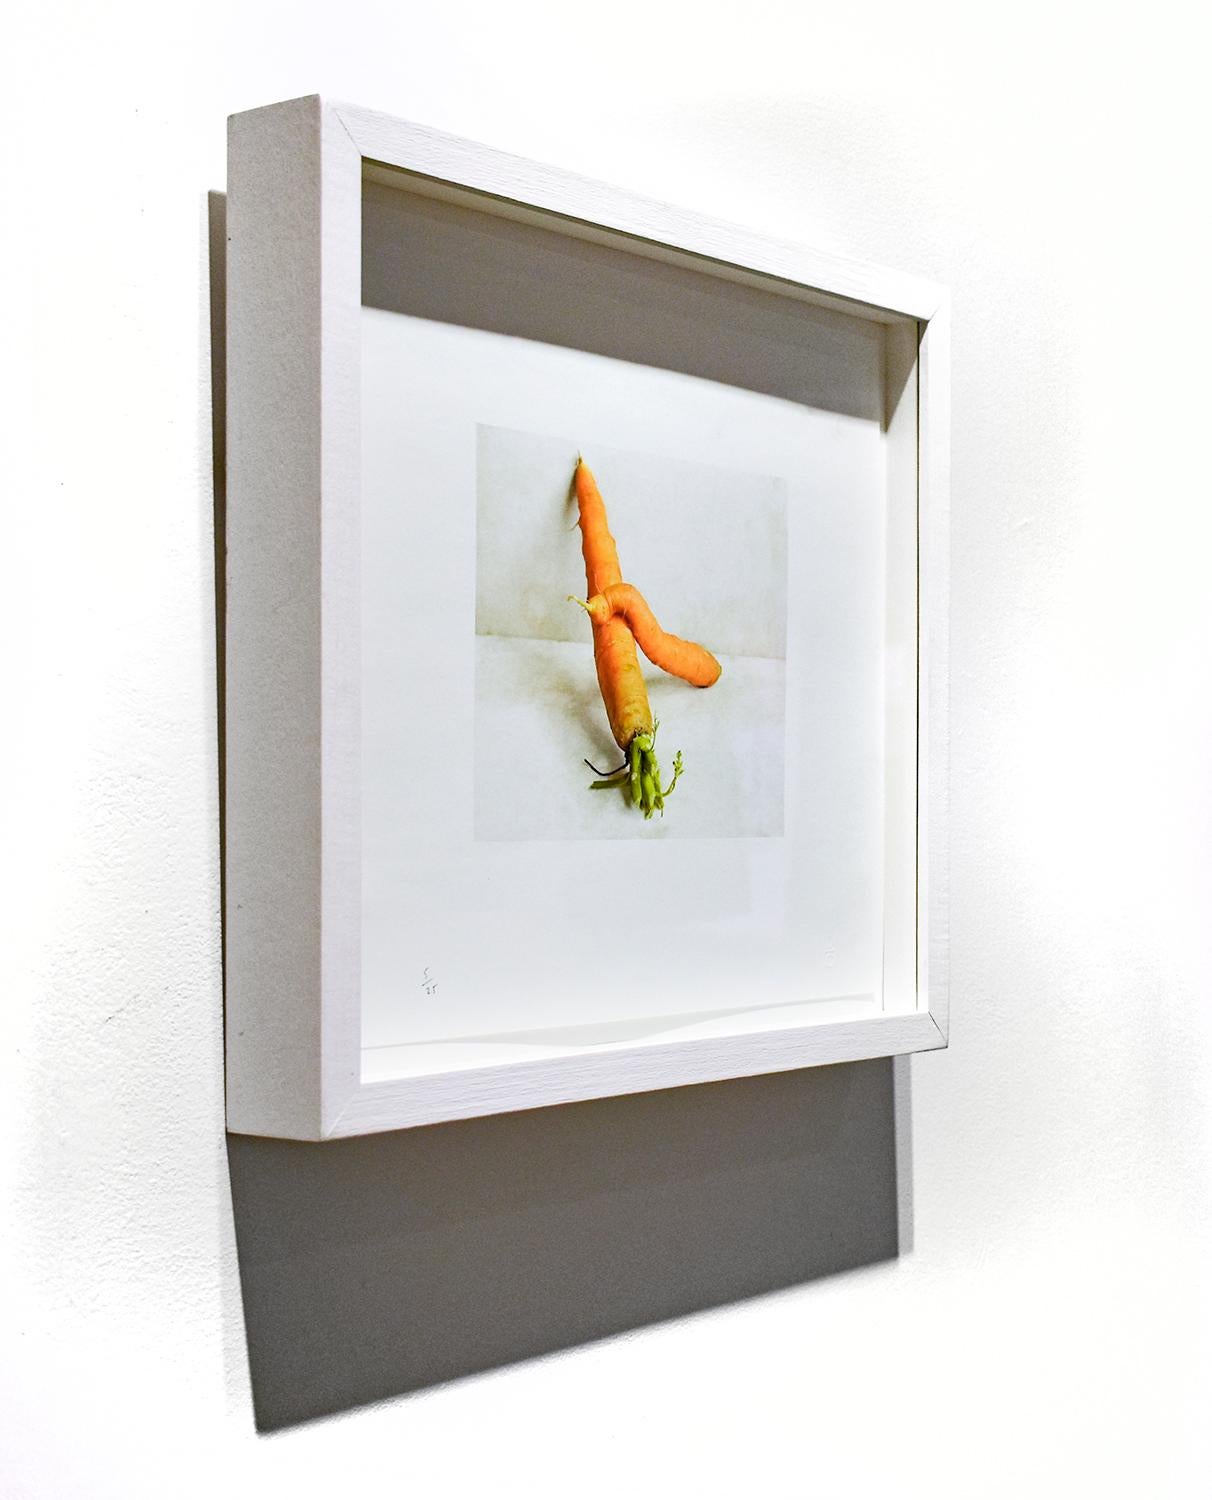 Zeitgenössische Farbfotografie eines Stilllebens mit orangefarbenen Karotten vor einer weißen Wand 
Karotten (Gegen die Wand), fotografiert von David Halliday 2007
archivpigmentdruck, Auflage 5/25
6.5 x 8 Zoll, ungerahmt 
14.5 x 16 Zoll in weiß